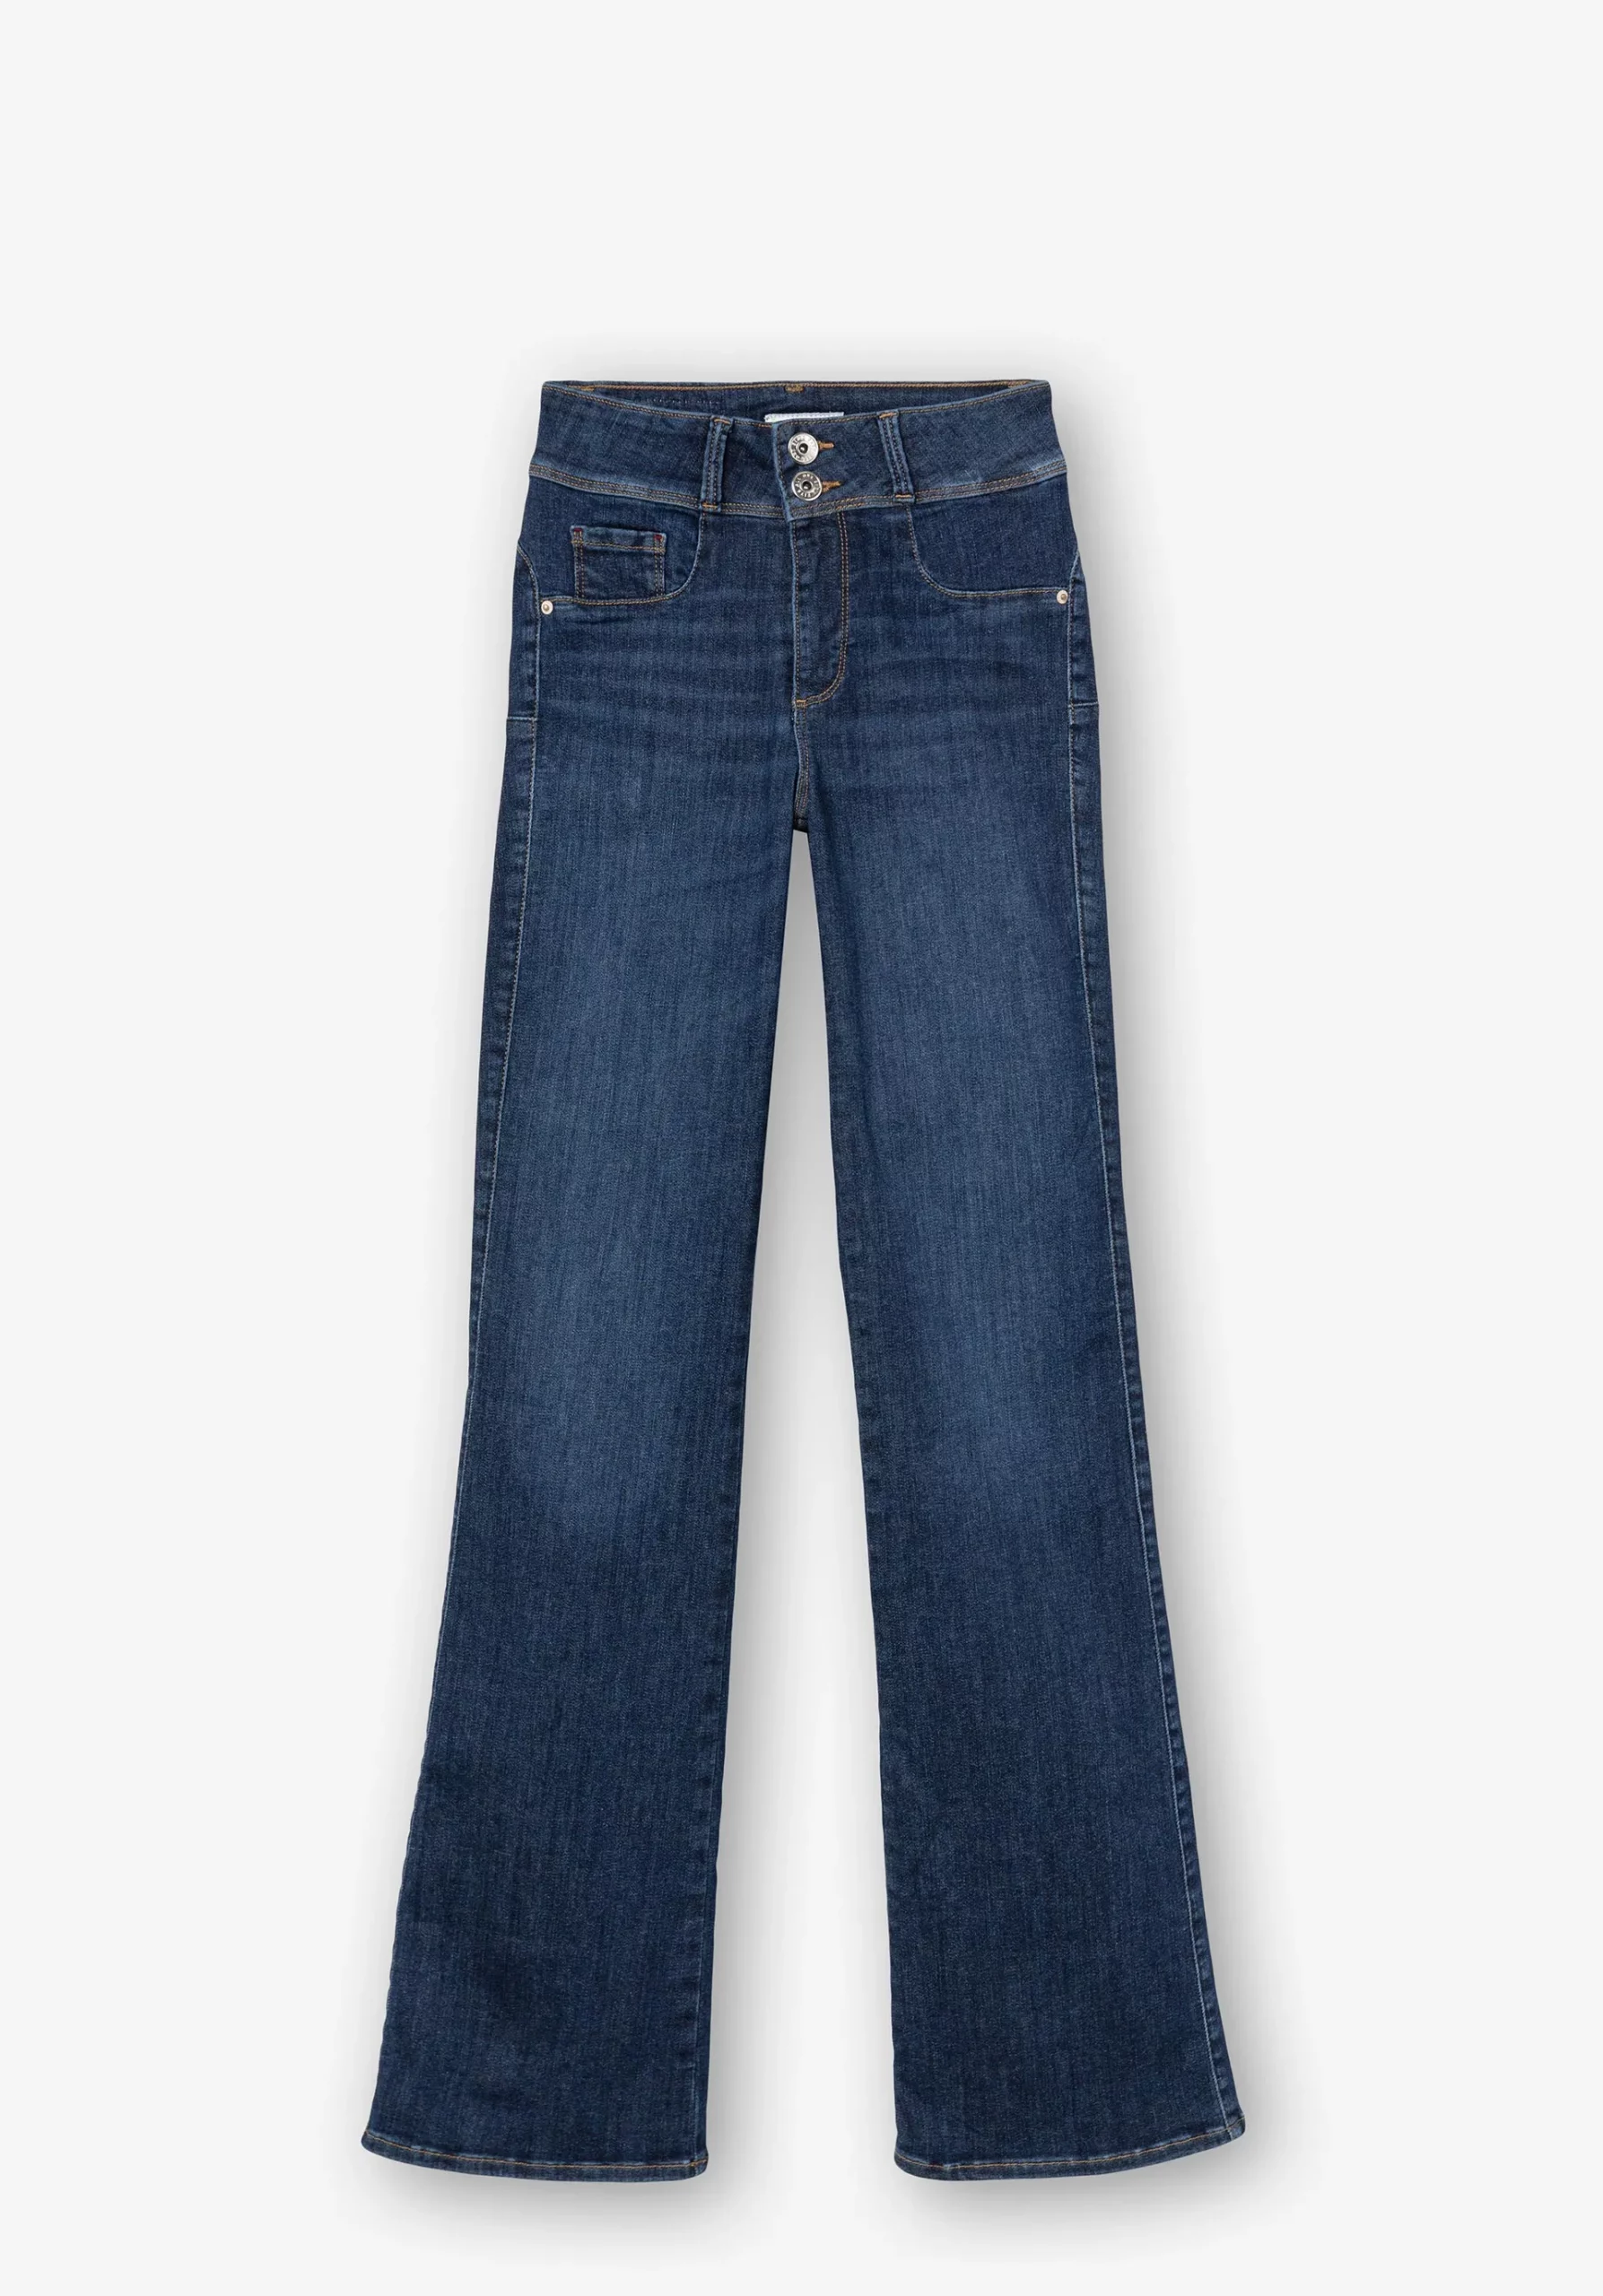 Jeans One Size Bootcut Silhouette Tiro Alto 4 O